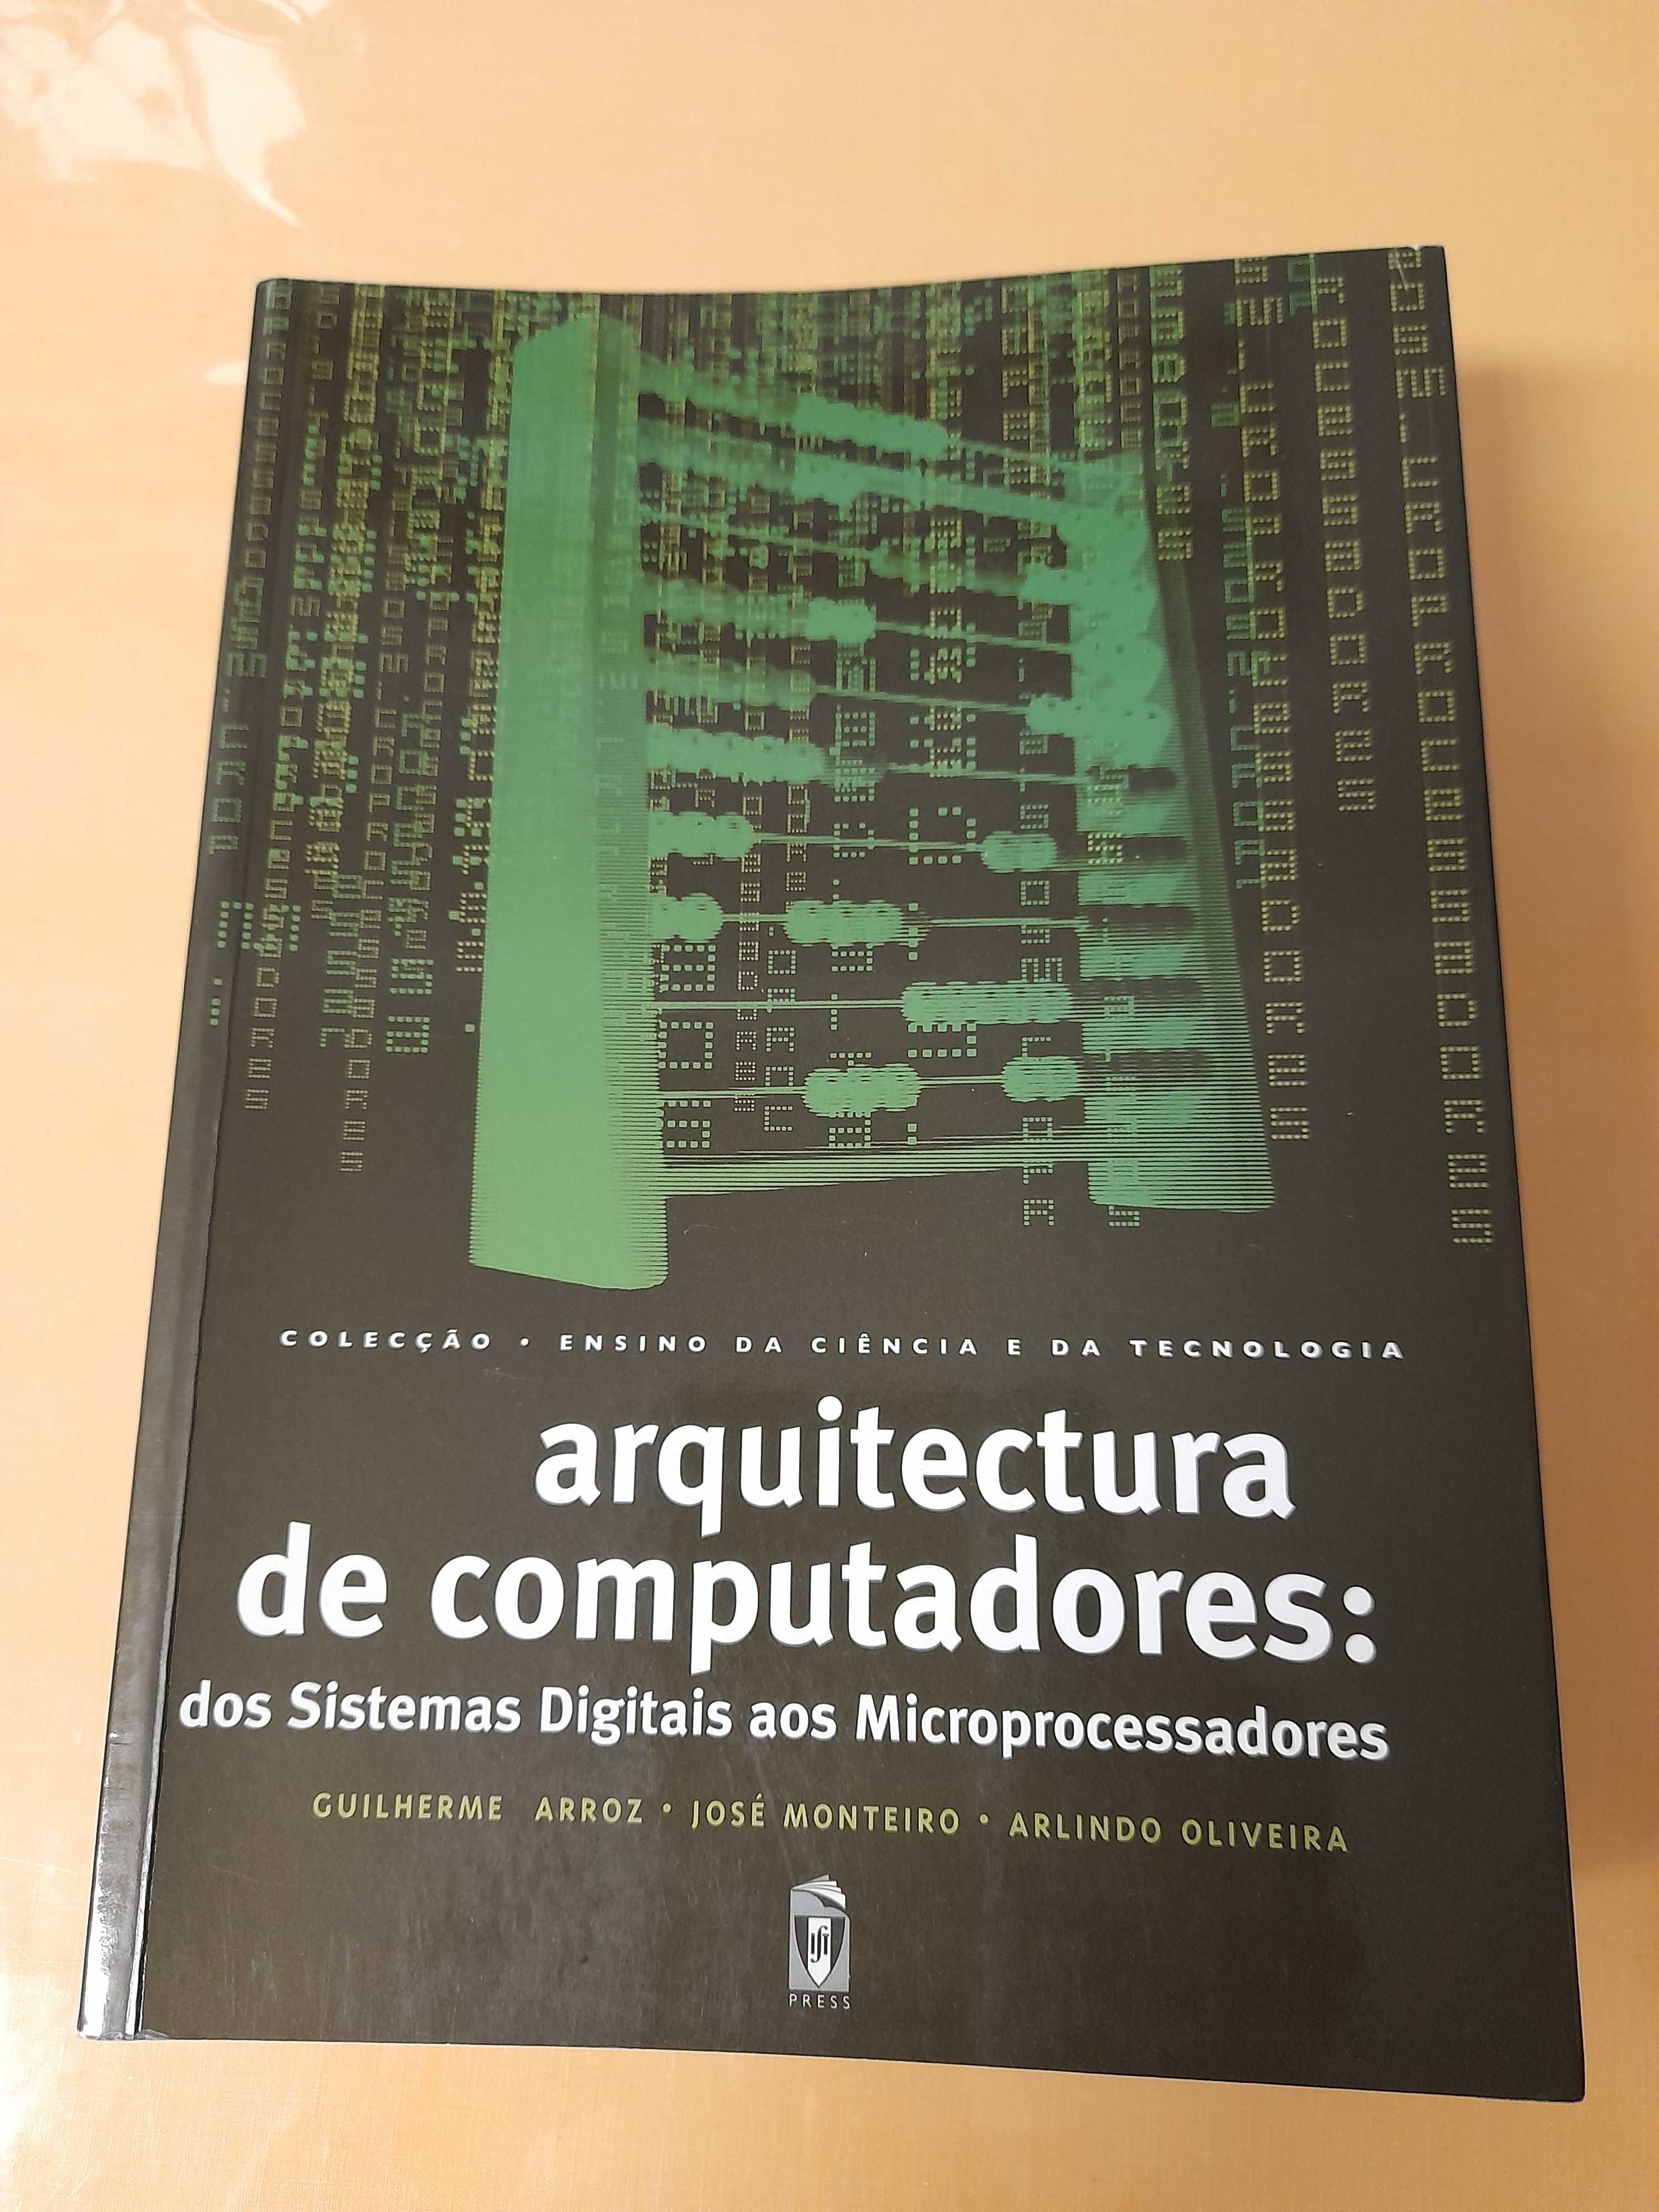 Livro "arquitectura de computadores" IST